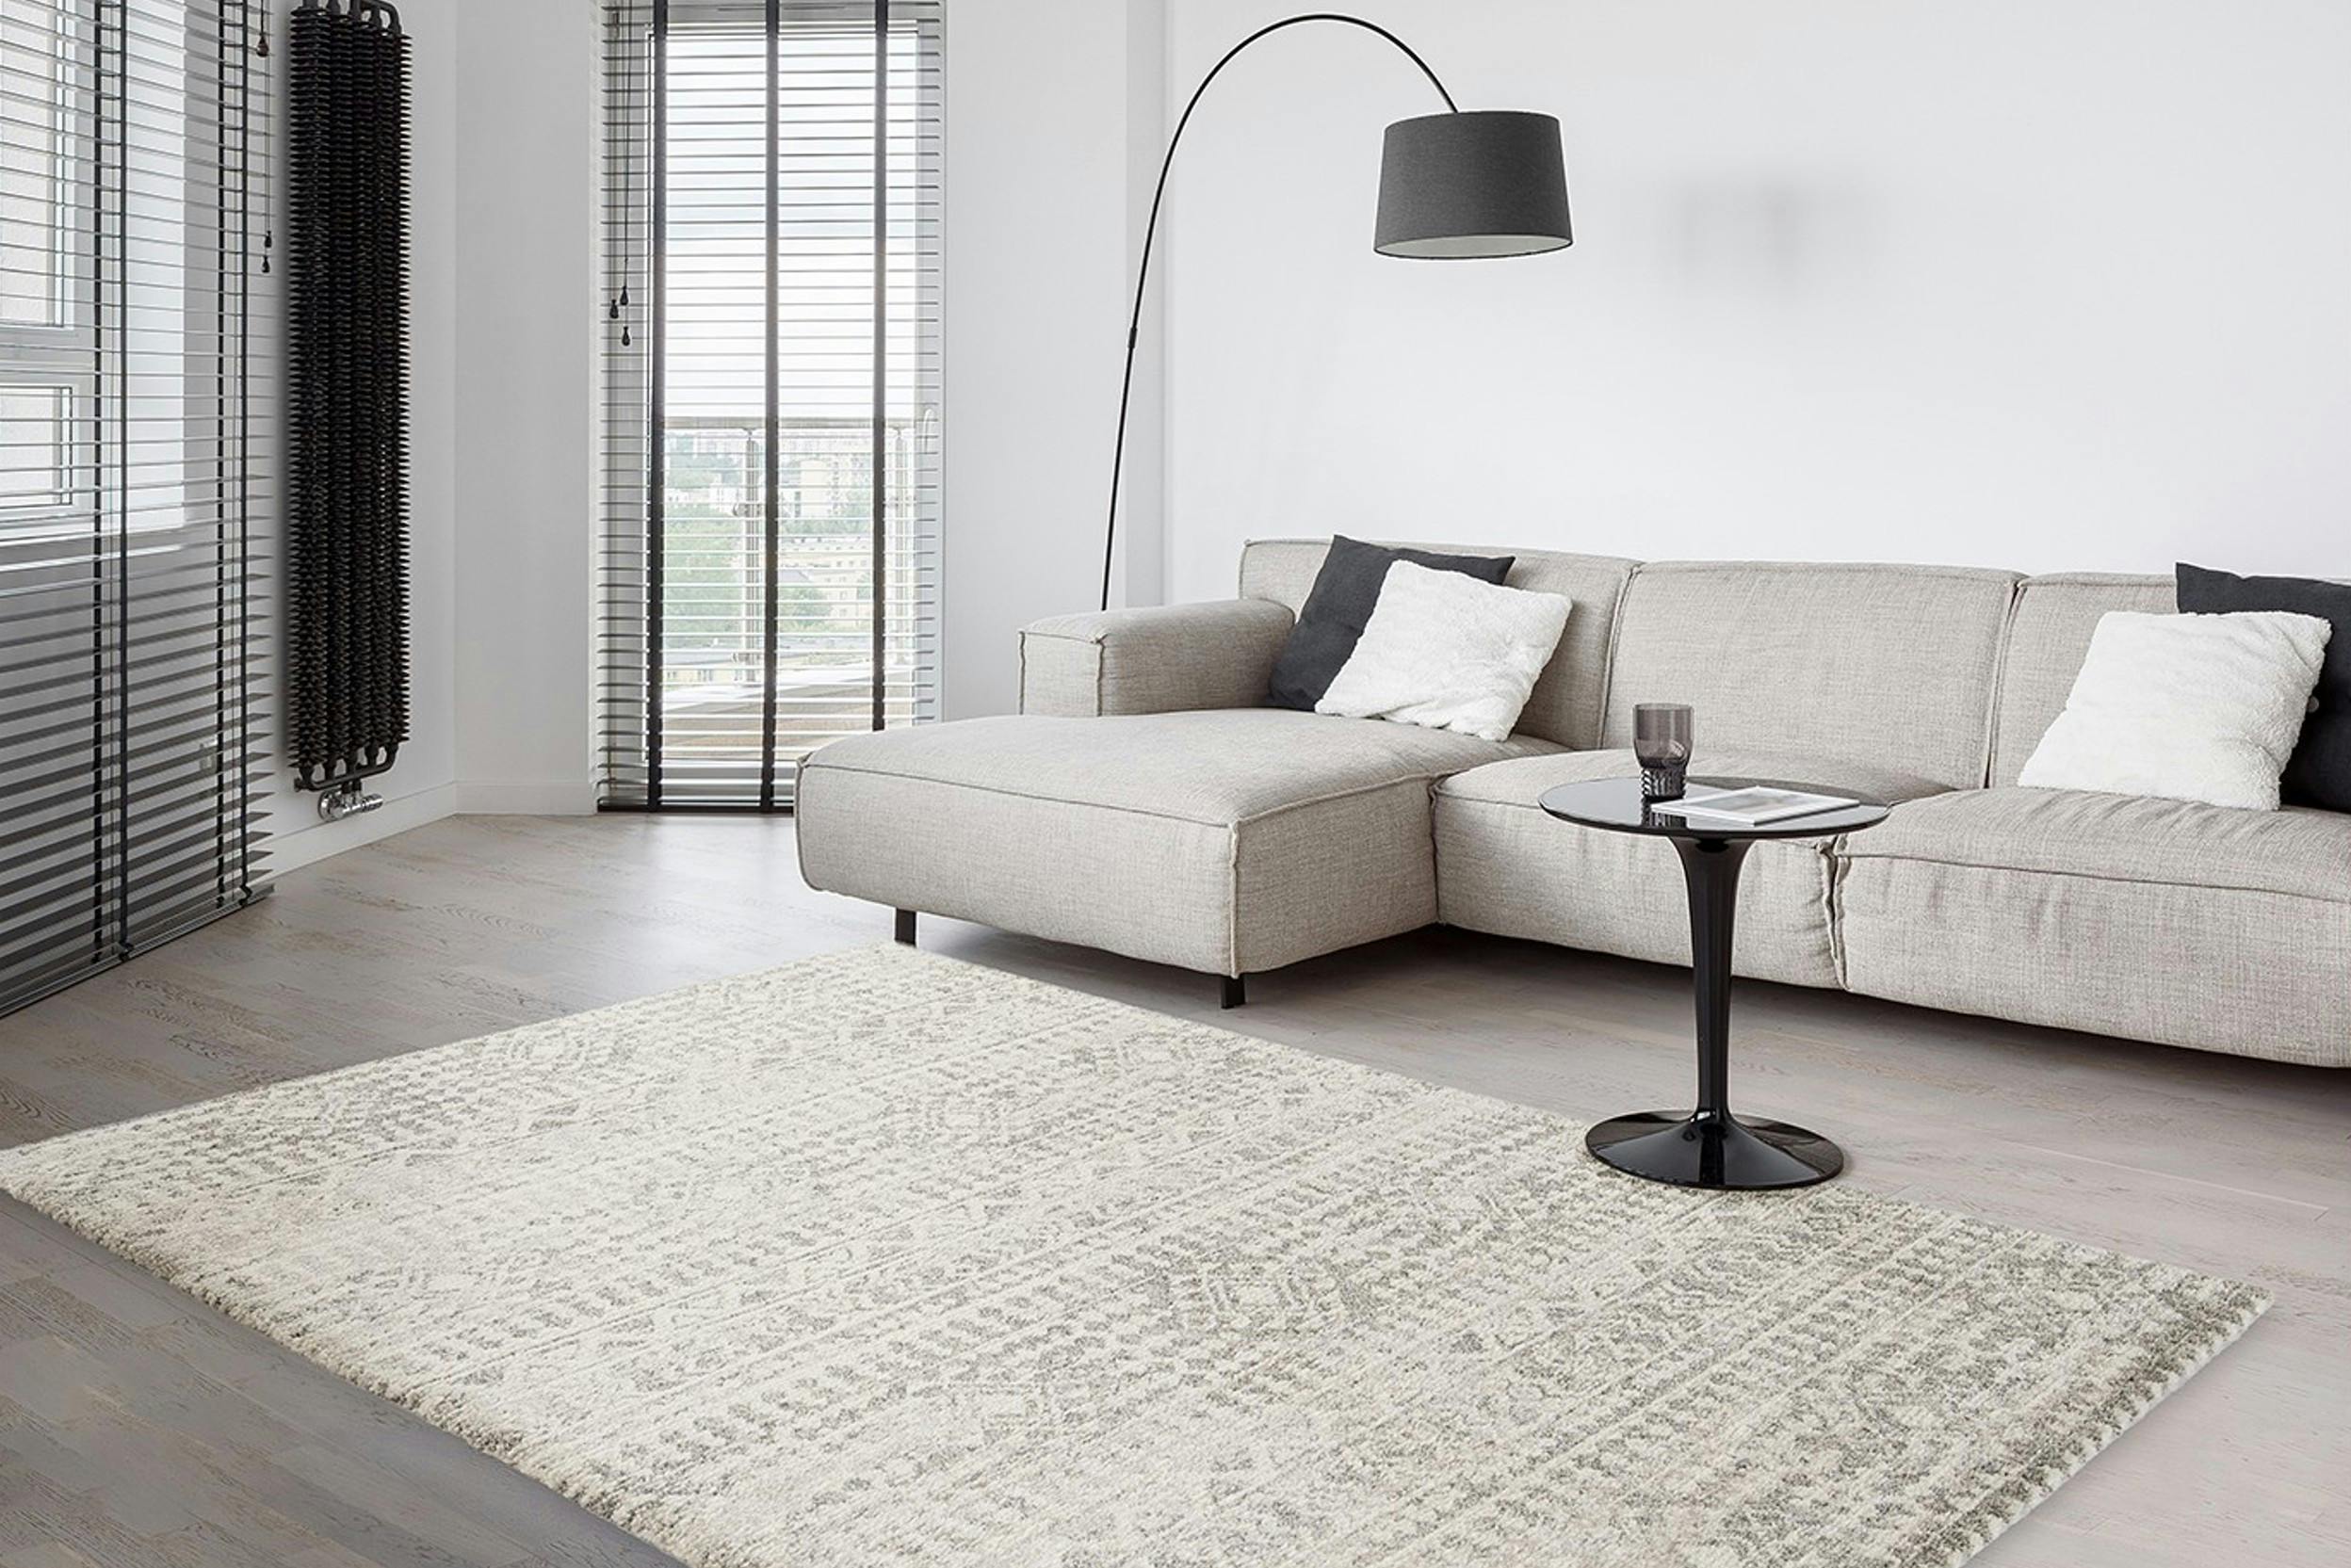 Grau gemusterter Teppich in minimalistischem Wohnzimmer mit hellgrauem Sofa und schwarzer Bogenlampe sowie Beistelltisch